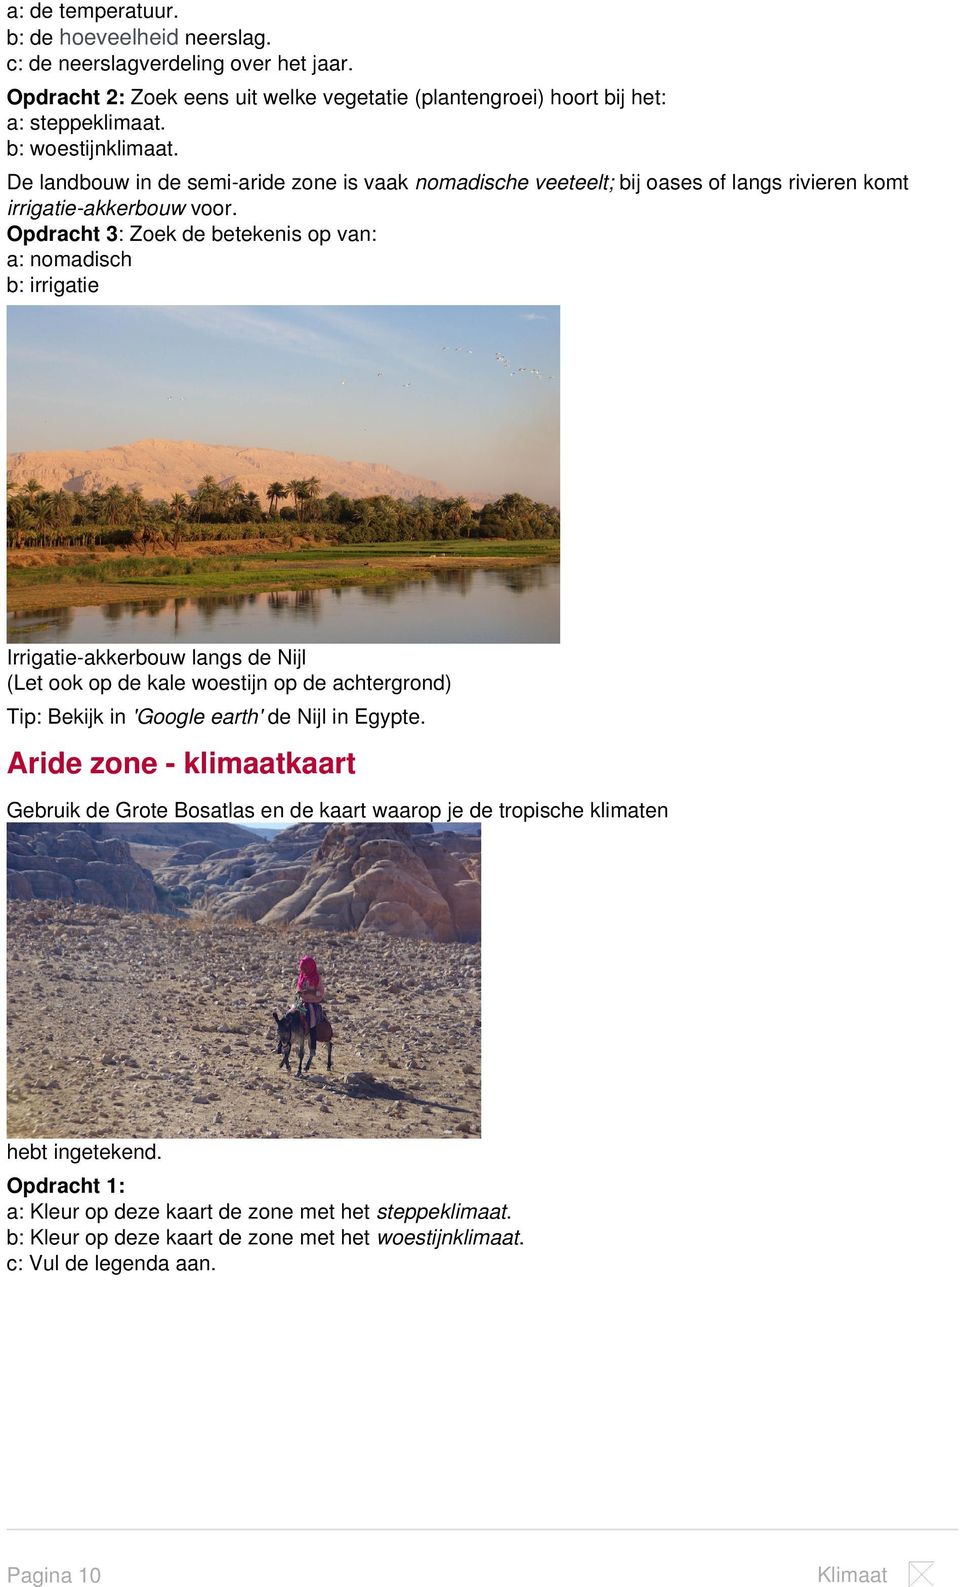 Opdracht 3: Zoek de betekenis op van: a: nomadisch b: irrigatie Irrigatie-akkerbouw langs de Nijl (Let ook op de kale woestijn op de achtergrond) Tip: Bekijk in 'Google earth' de Nijl in Egypte.